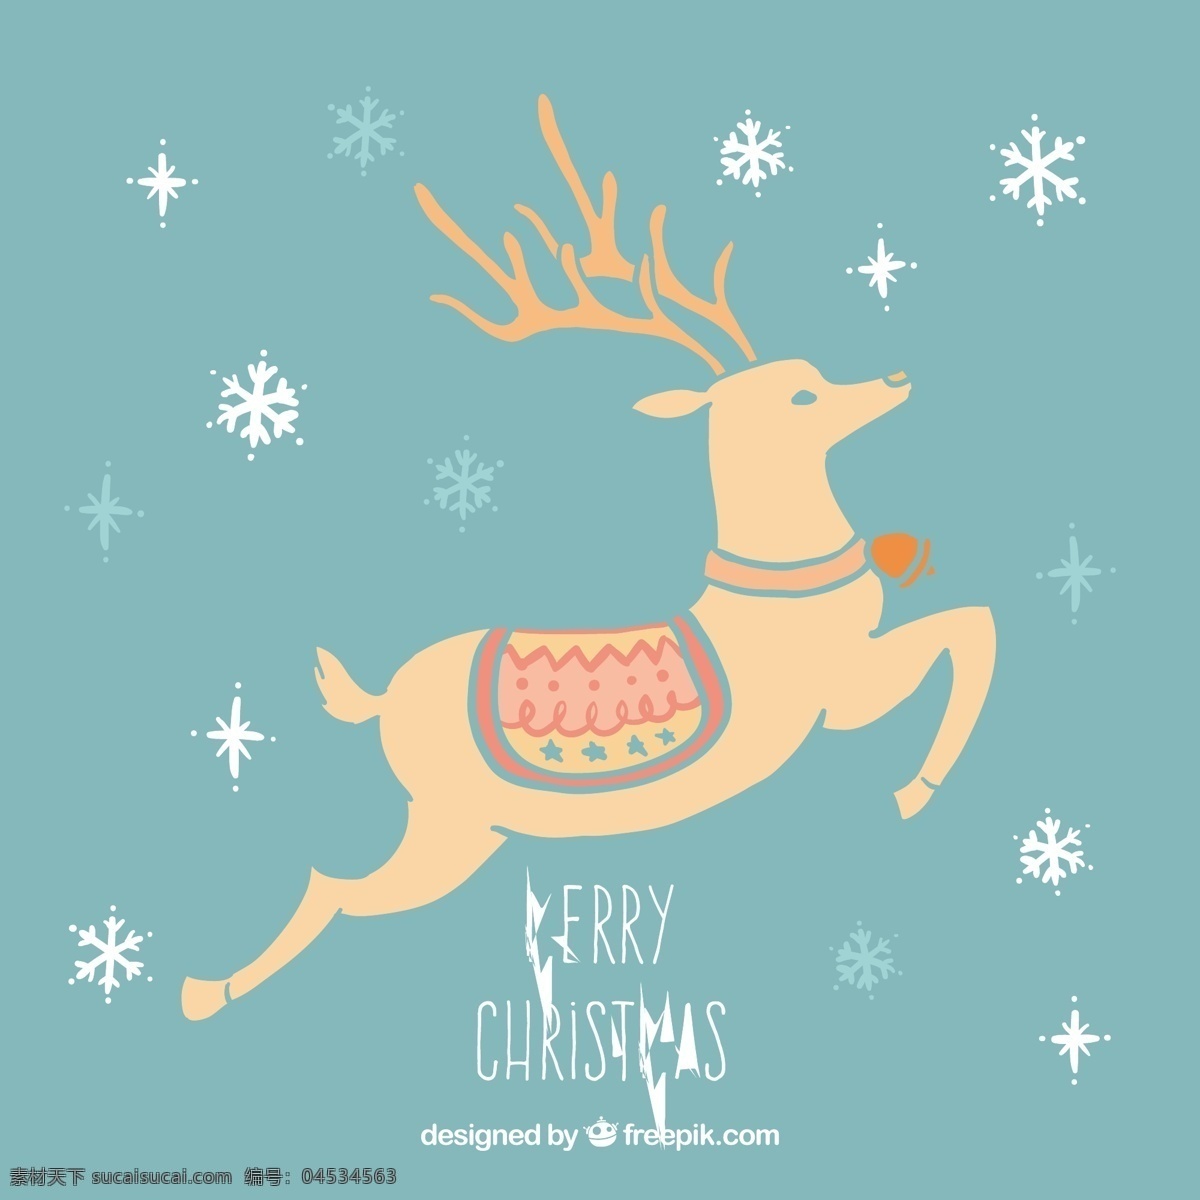 圣诞驯鹿卡 圣诞卡 动物 圣诞快乐 冬天快乐 圣诞 庆祝 节日 驯鹿 节日快乐 贺卡 问候 季节 快乐 十二月 青色 天蓝色